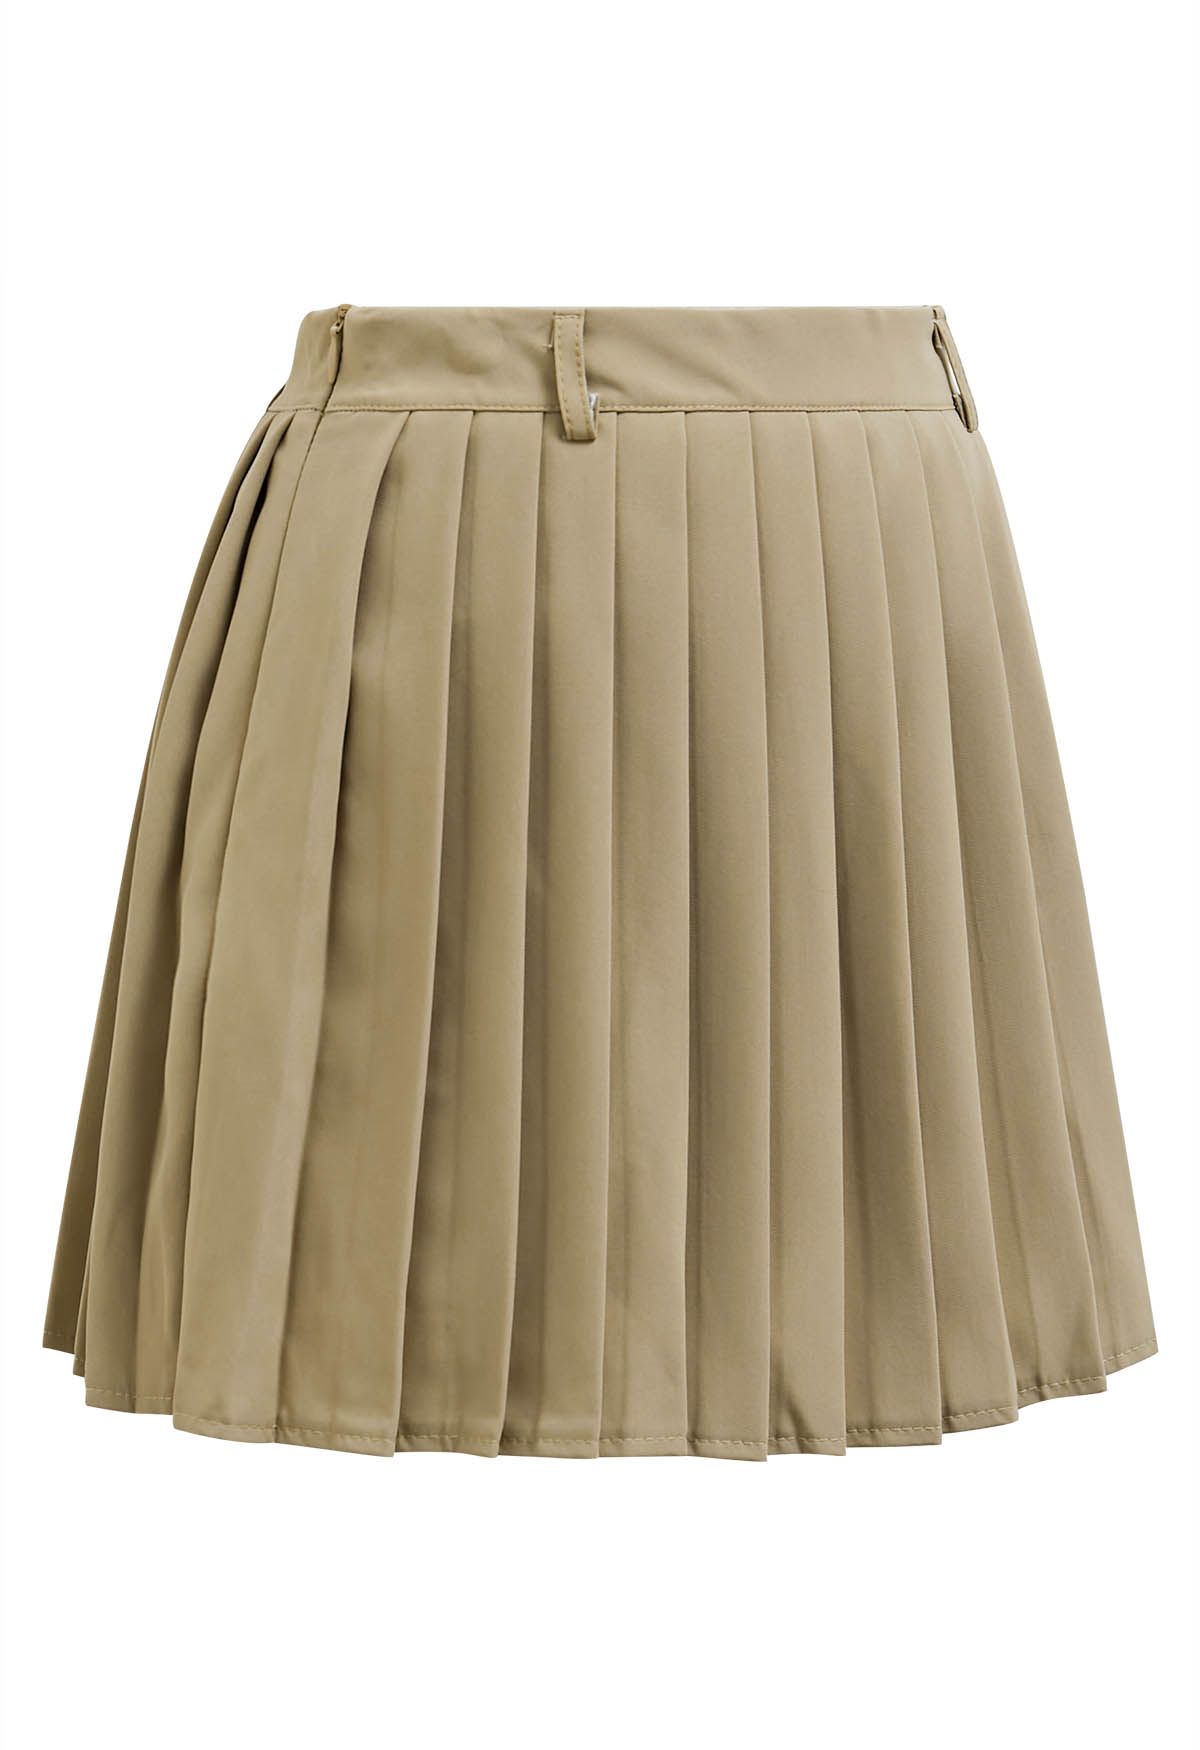 Classic Pleated Mini Skirt in Light Tan